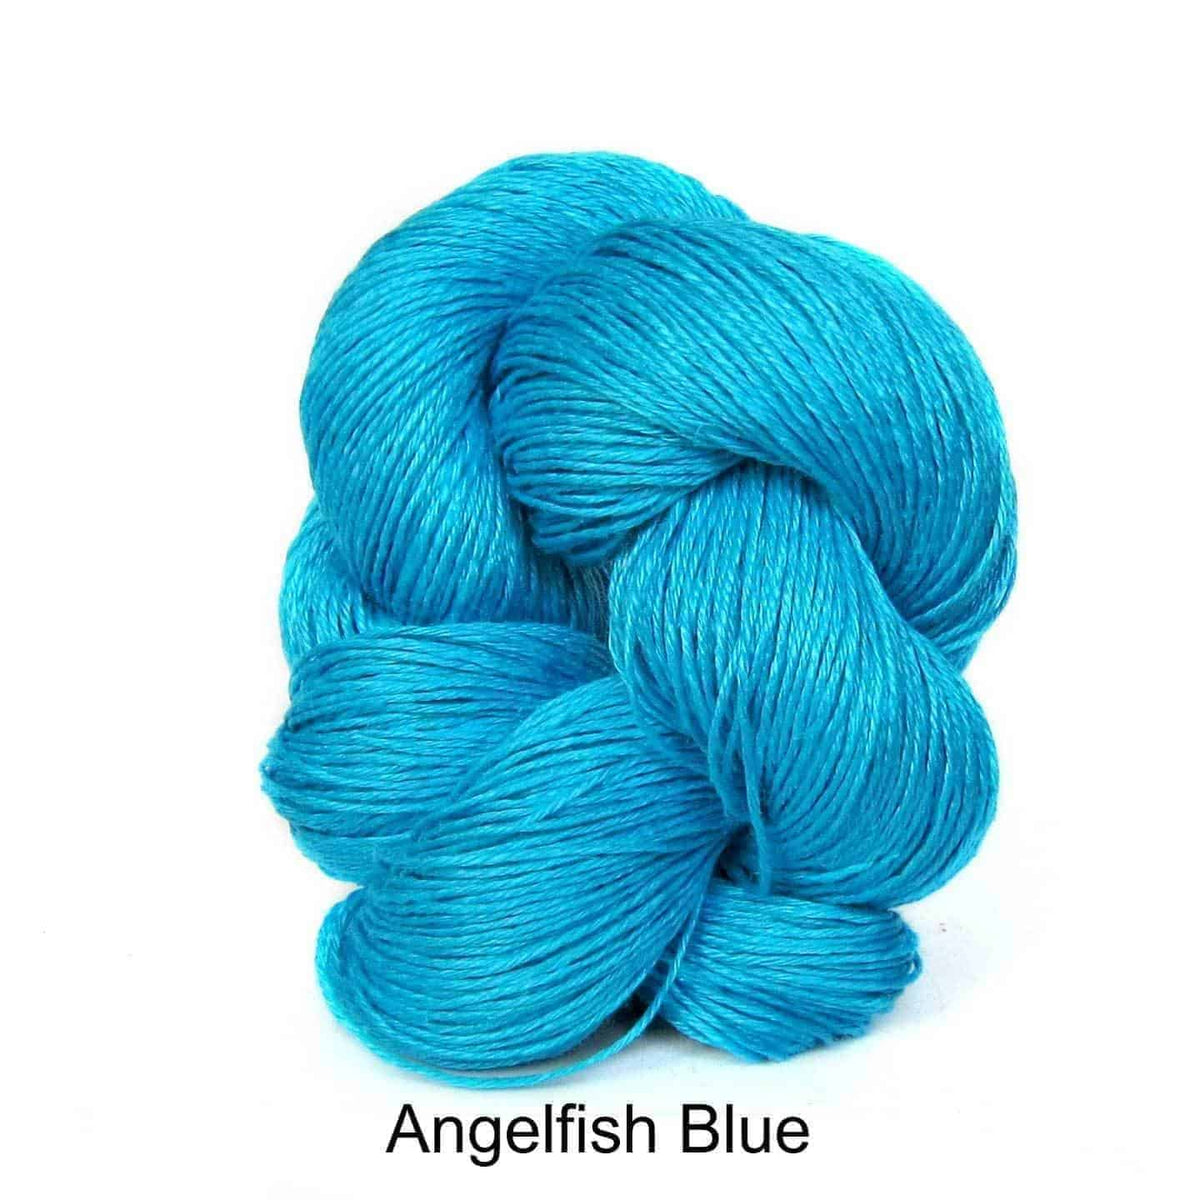 Euroflax Wet Spun Linen Yarn Angelfish Blue 2134